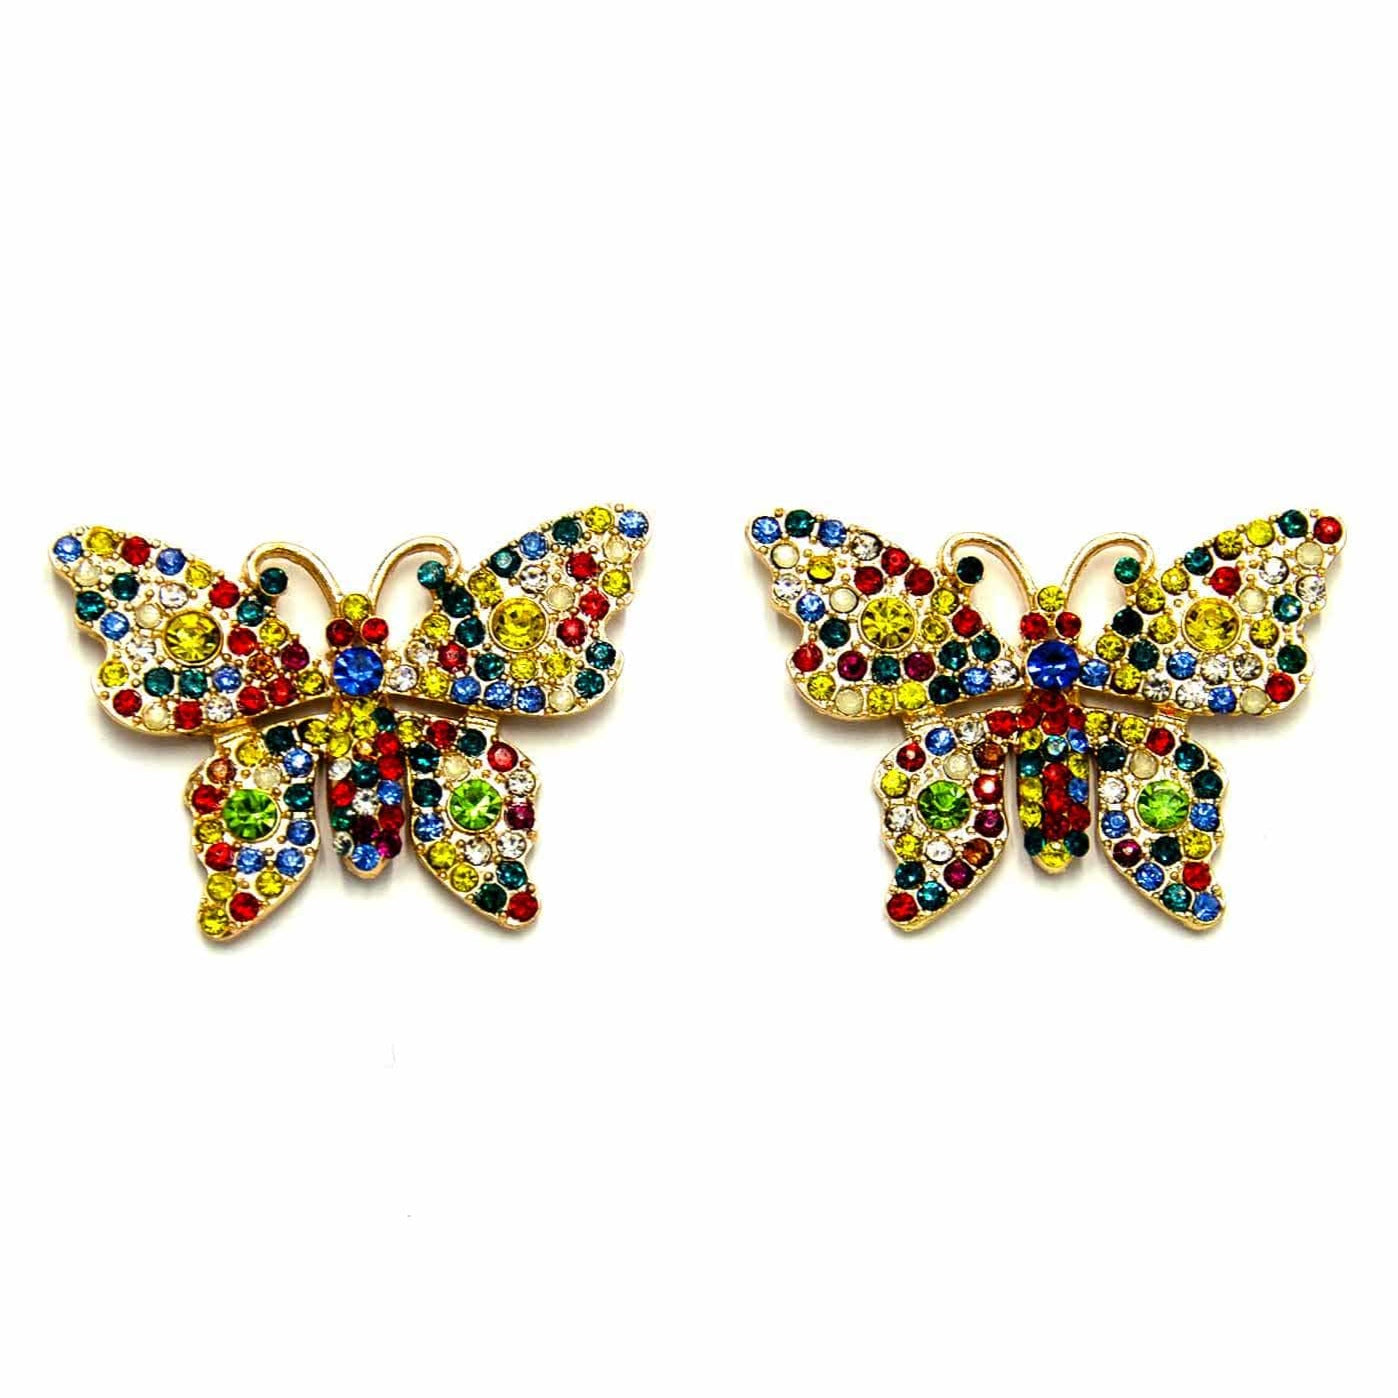 Palestro Milano Orecchini Farfalle Multicolor - New Collection